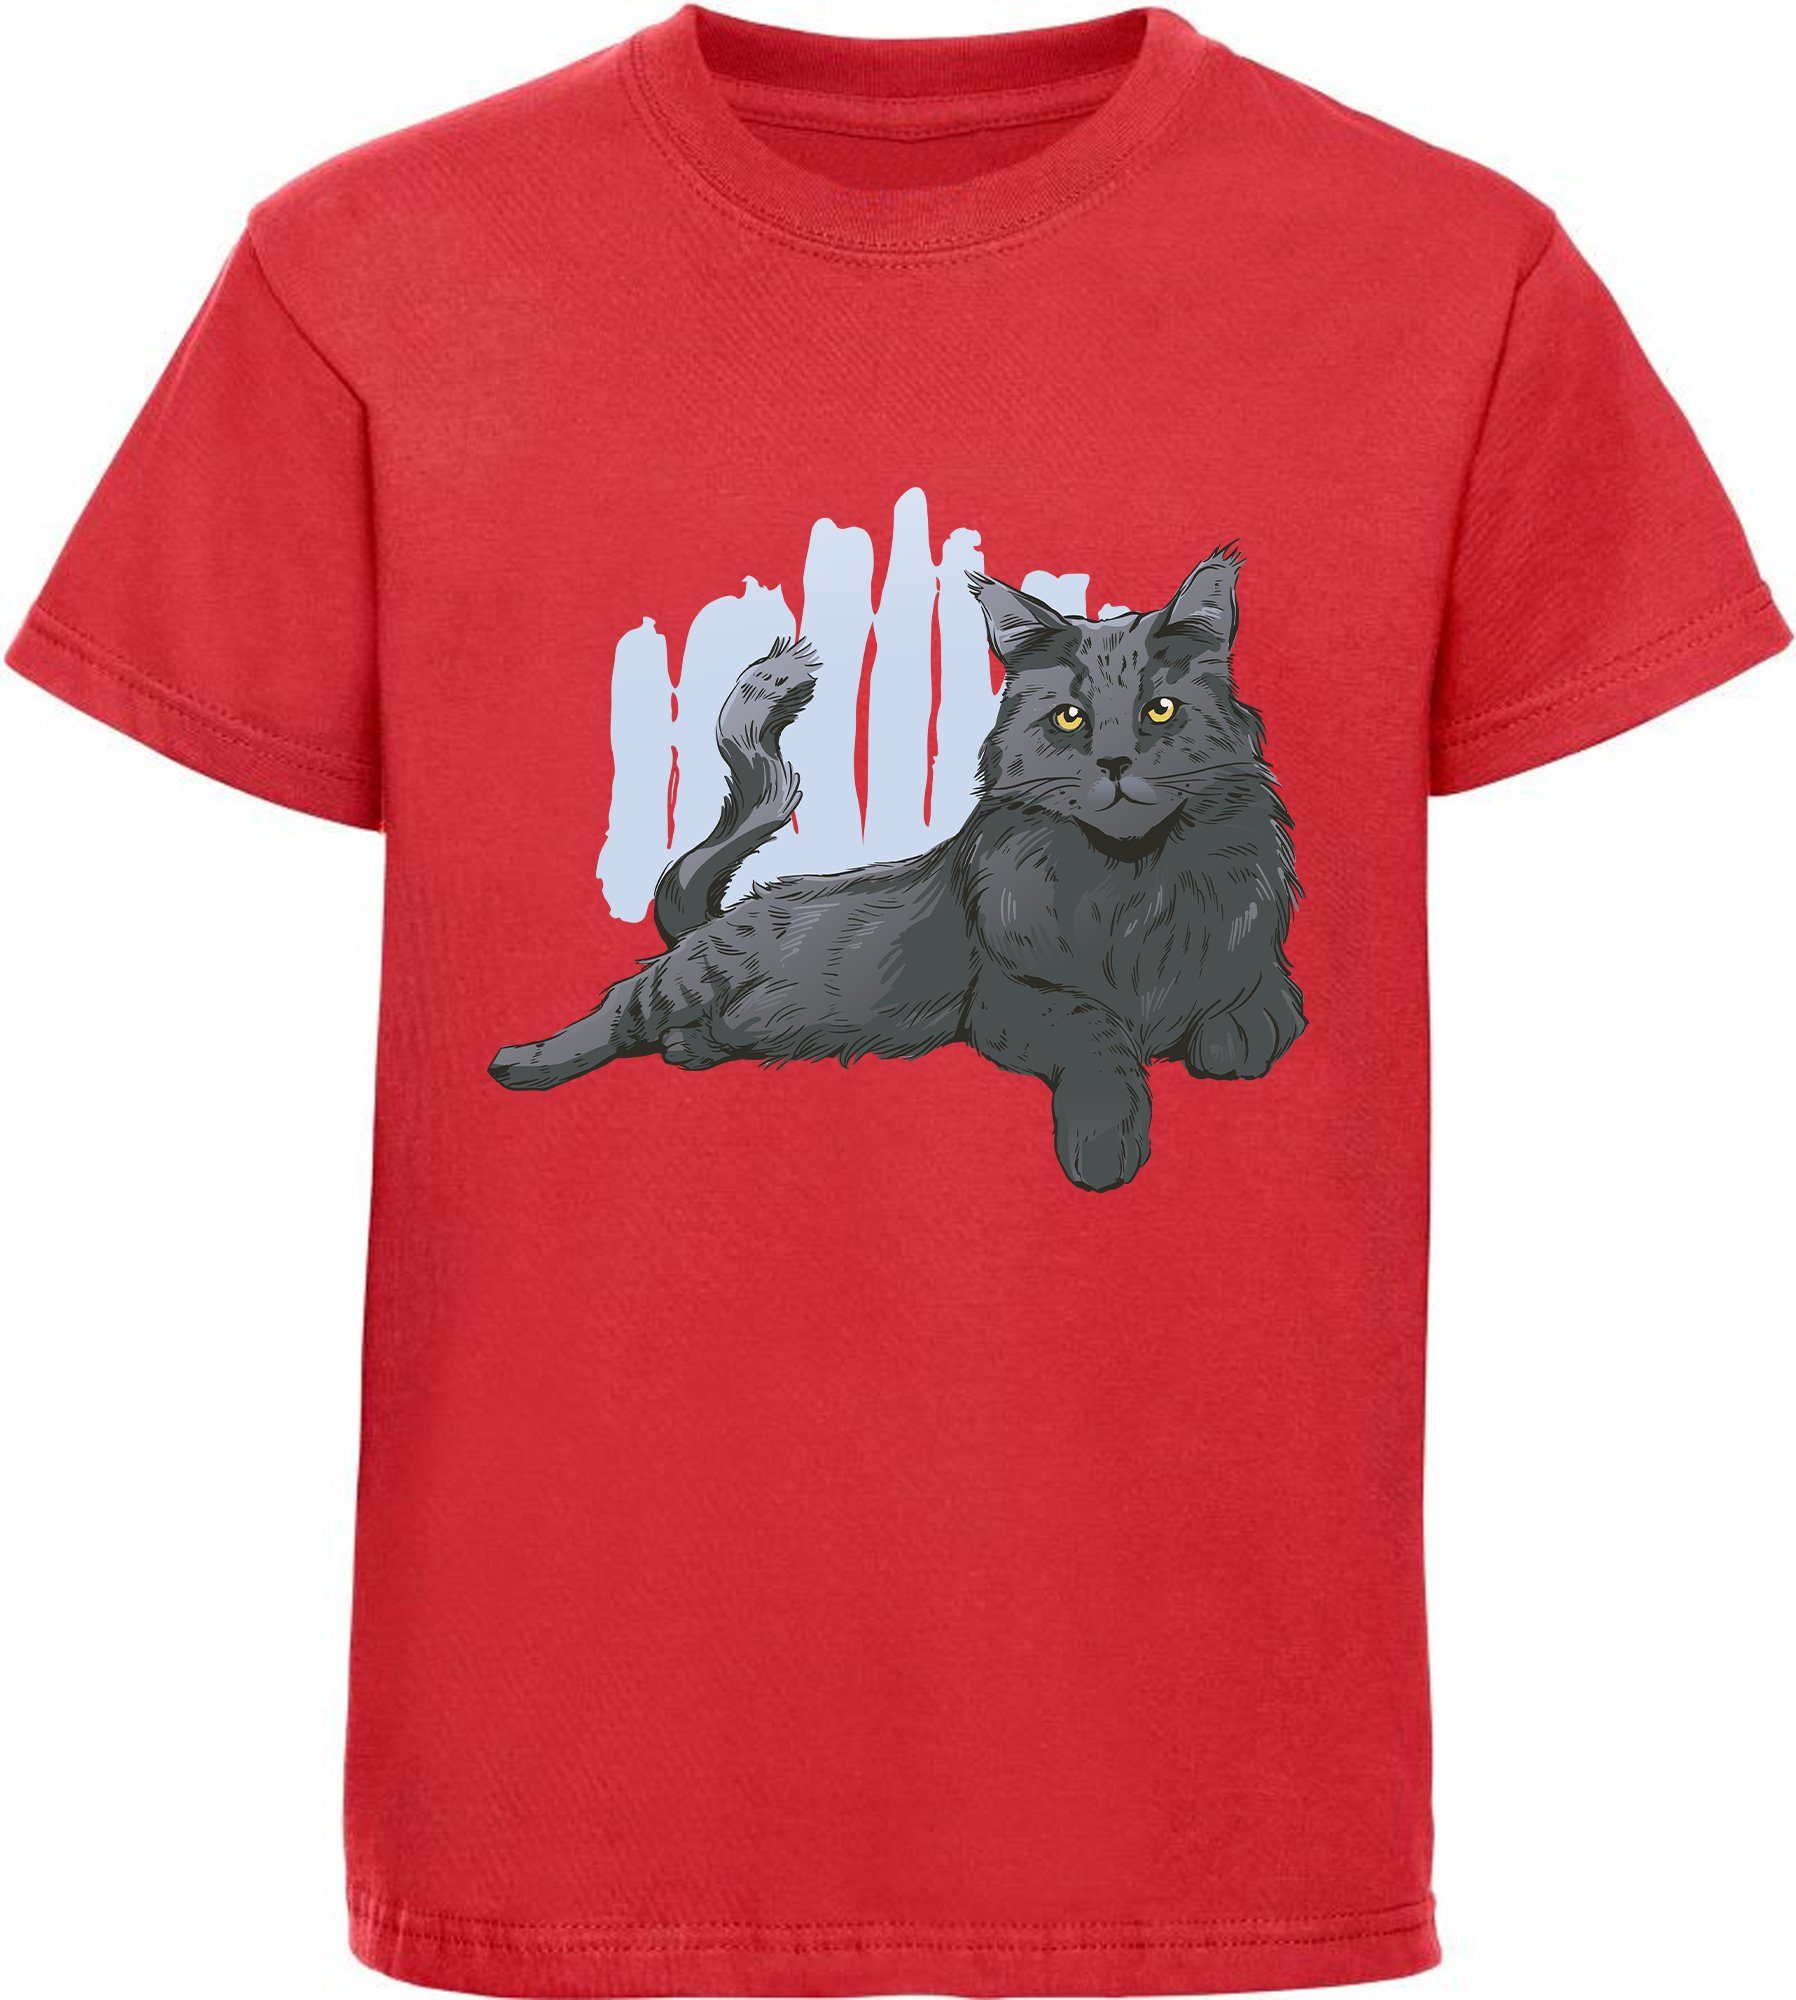 MyDesign24 Print-Shirt bedrucktes Mädchen T-Shirt mit liegender schwarzer Katze 100% Baumwolle mit Katzen Aufdruck, weiß, schwarz, rot, rosa, i108